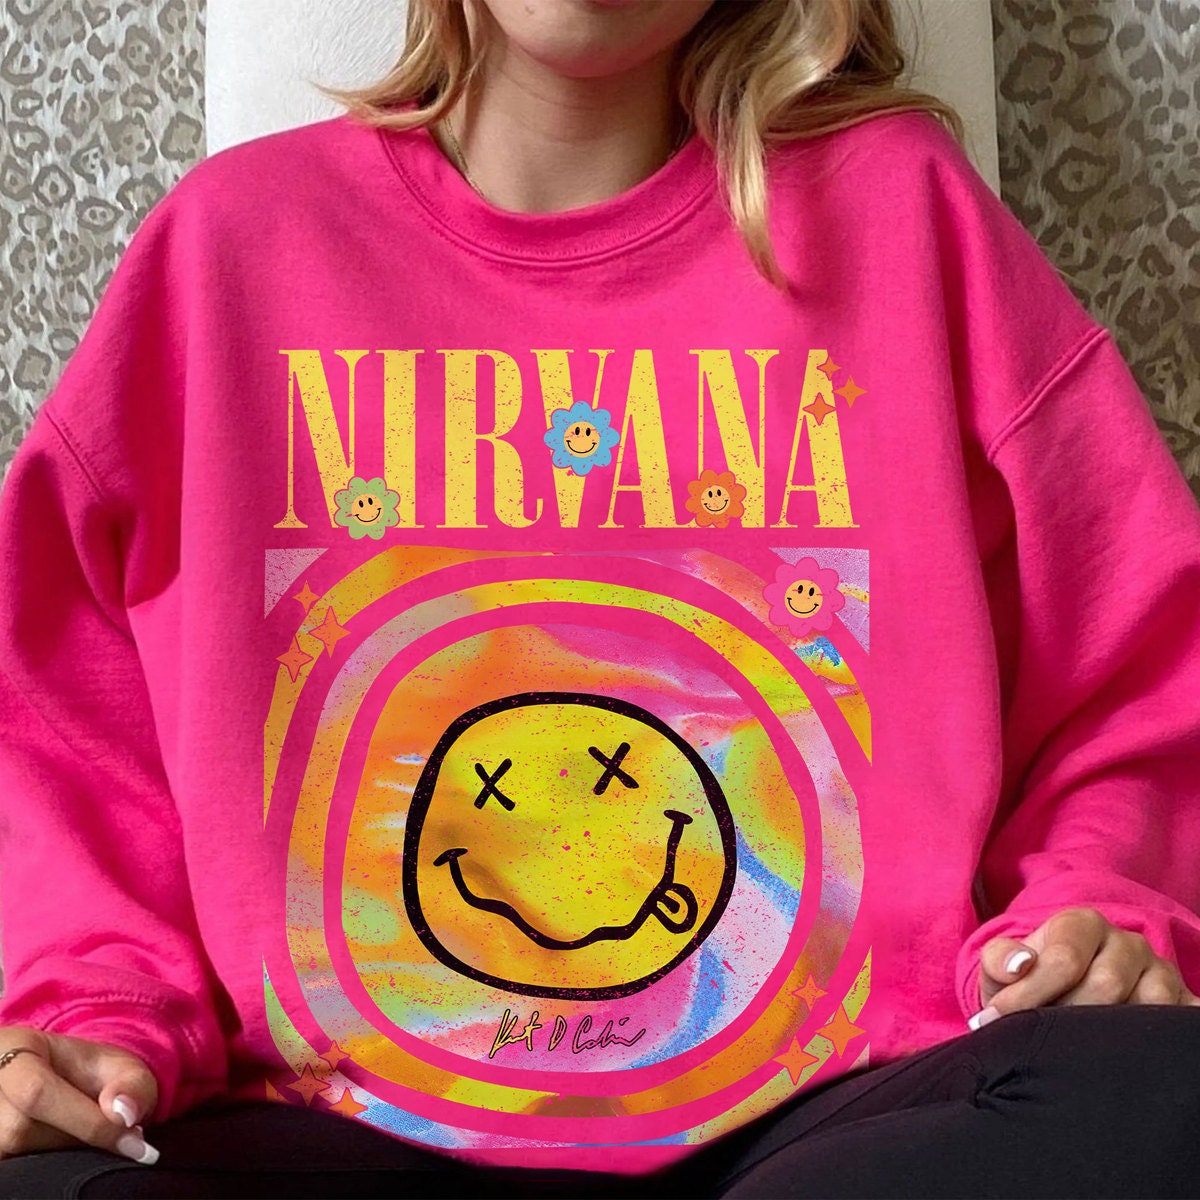 Discover Nirvana Smiley Face Crewneck Sweatshirt, Nirvana Smile Face Tee Shirt, Cute Smile Face Sweatshirt